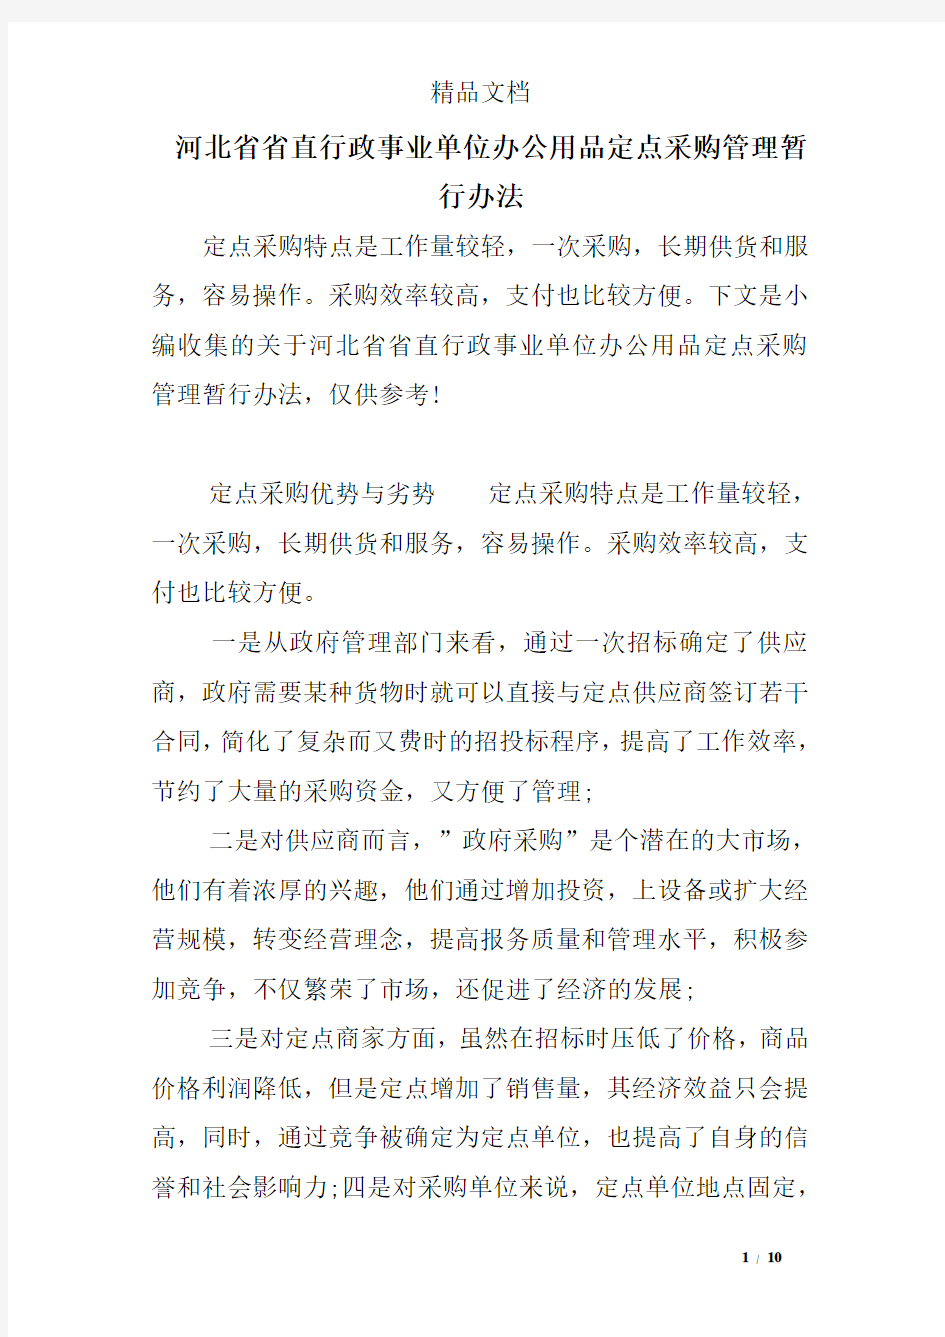 河北省省直行政事业单位办公用品定点采购管理暂行办法